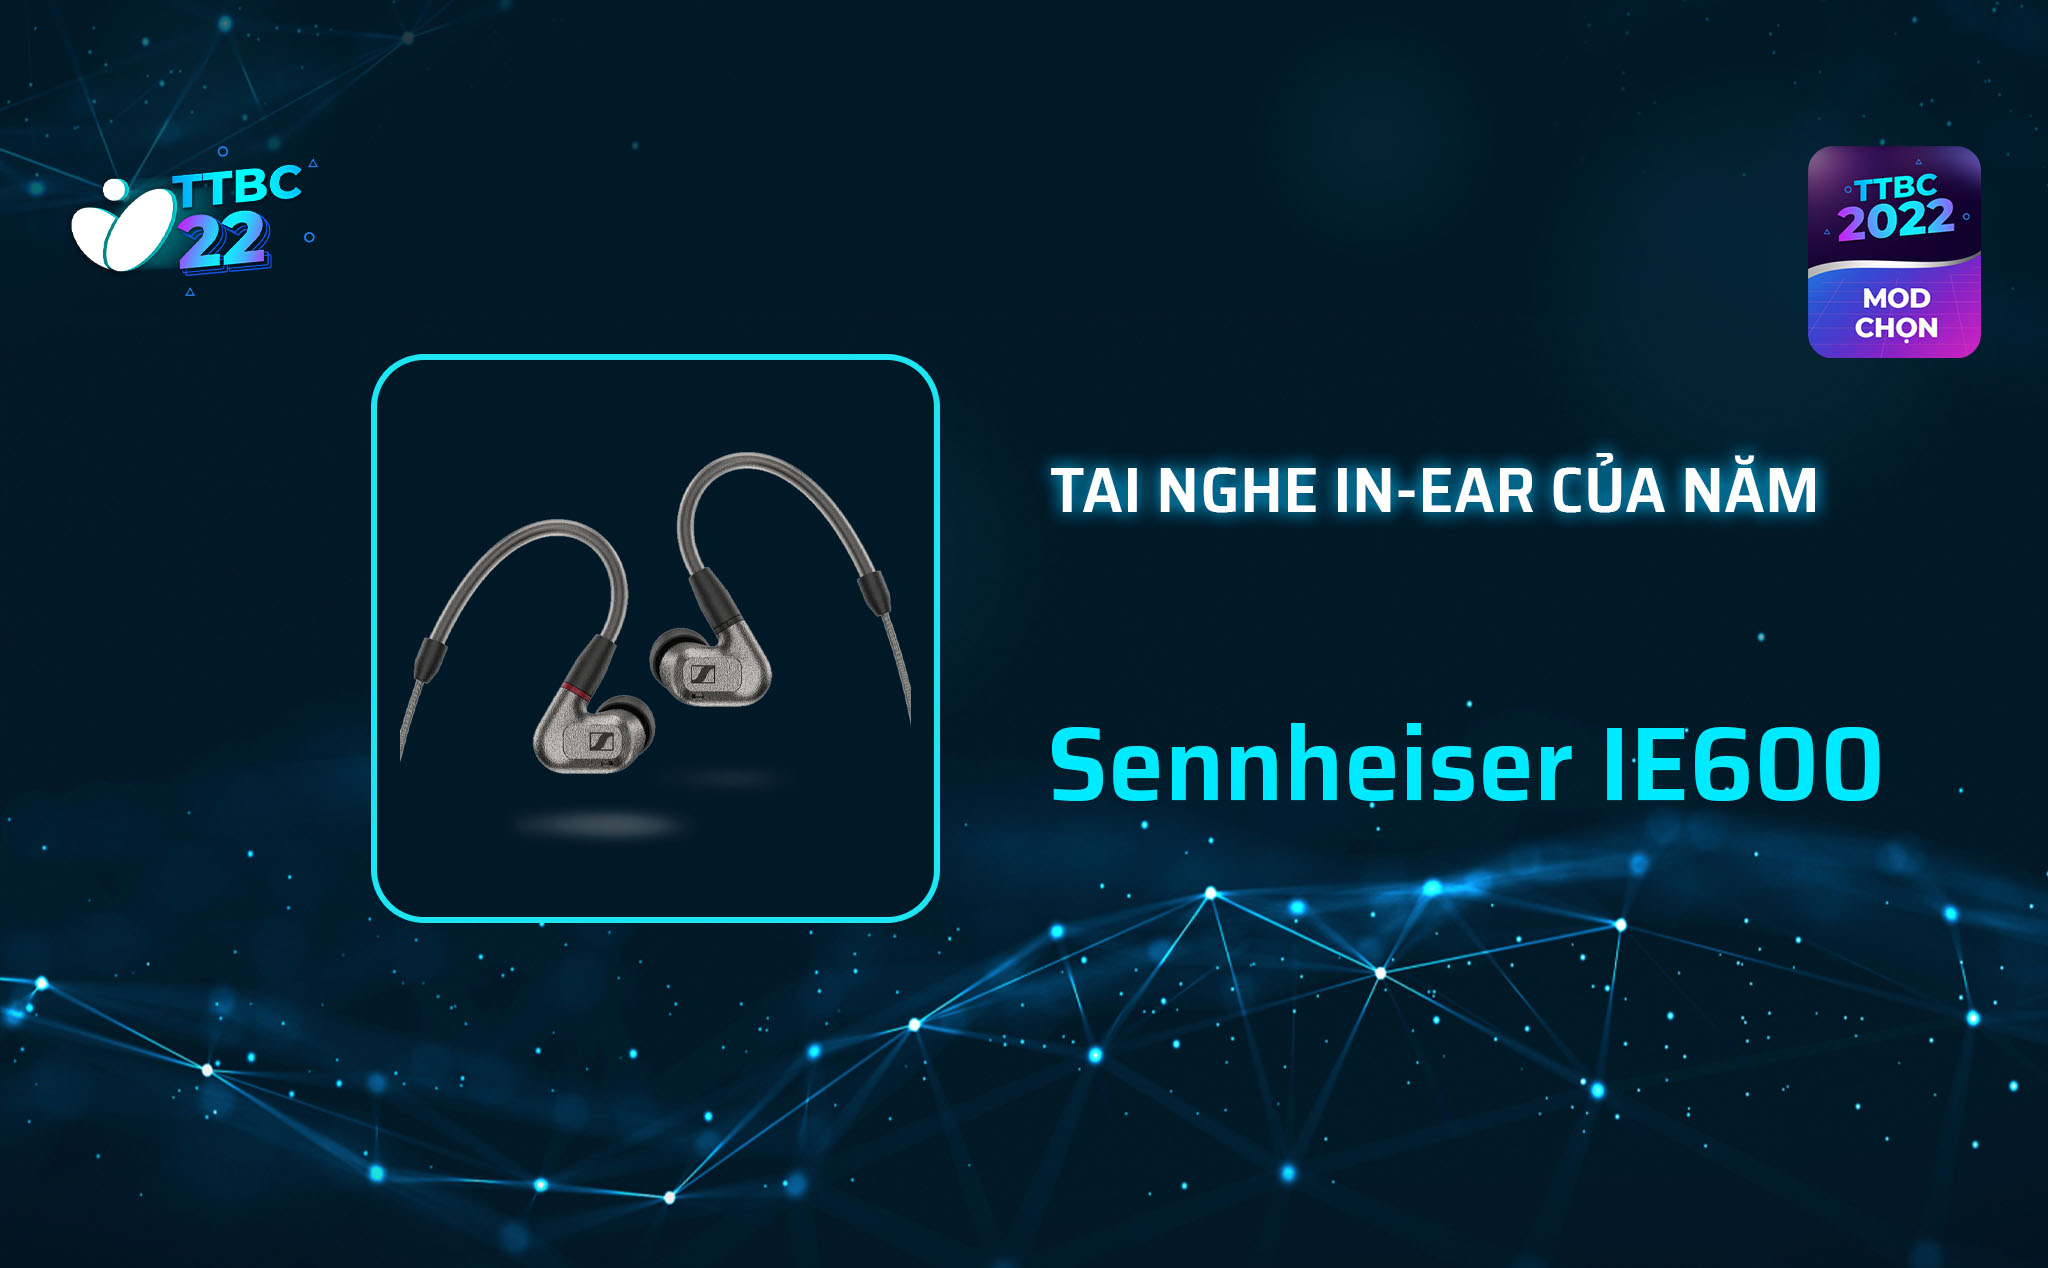 TTBC22 - Mod Choice - Sennheiser IE600: Tai nghe in-ear của năm